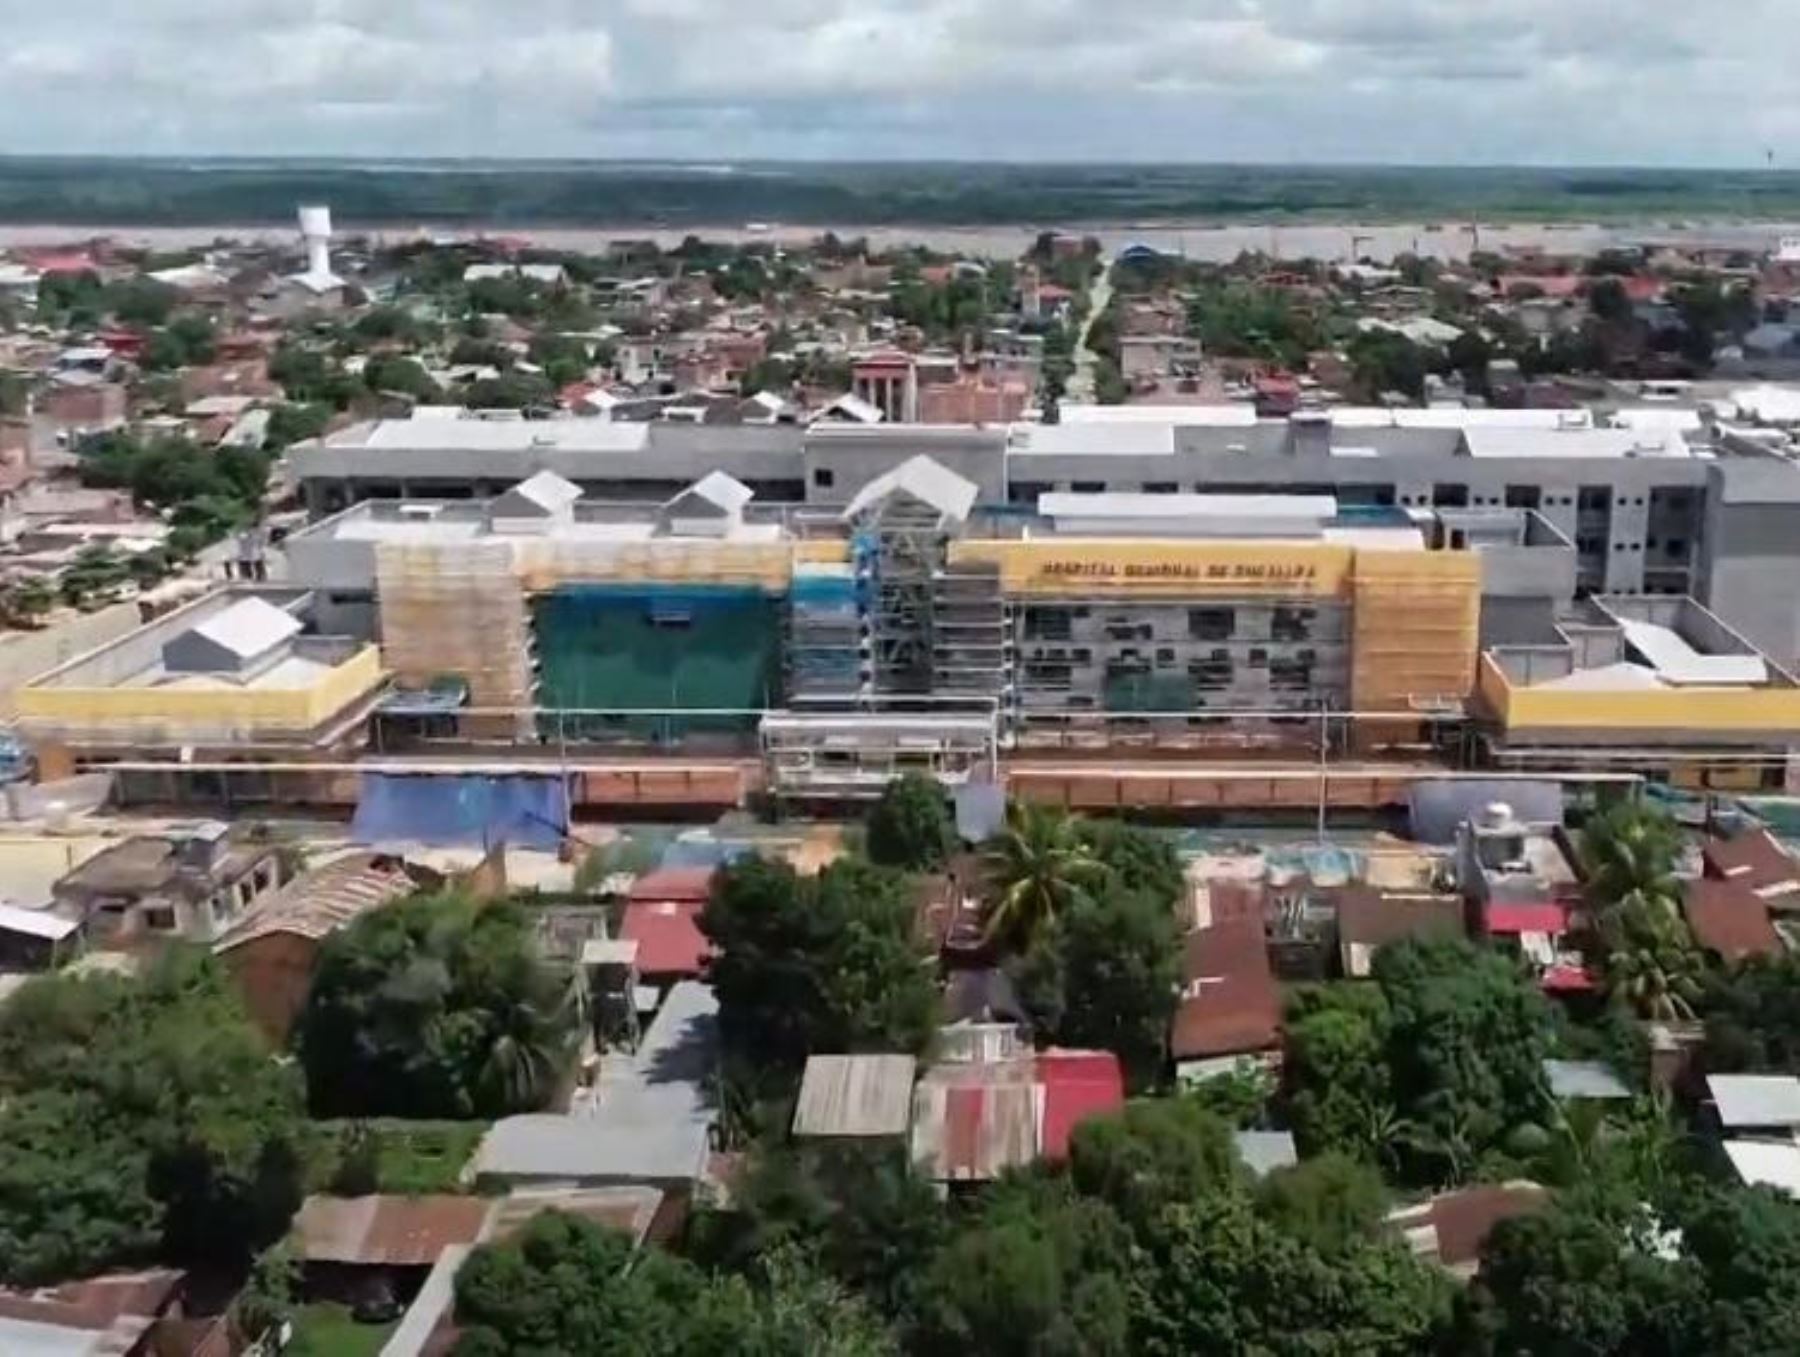 Un equipo técnico del Pronis arribó a Pucallpa, región Ucayali, para destrabar el proyecto de construcción del Hospital Regional de Pucallpa y reanudar las obras.